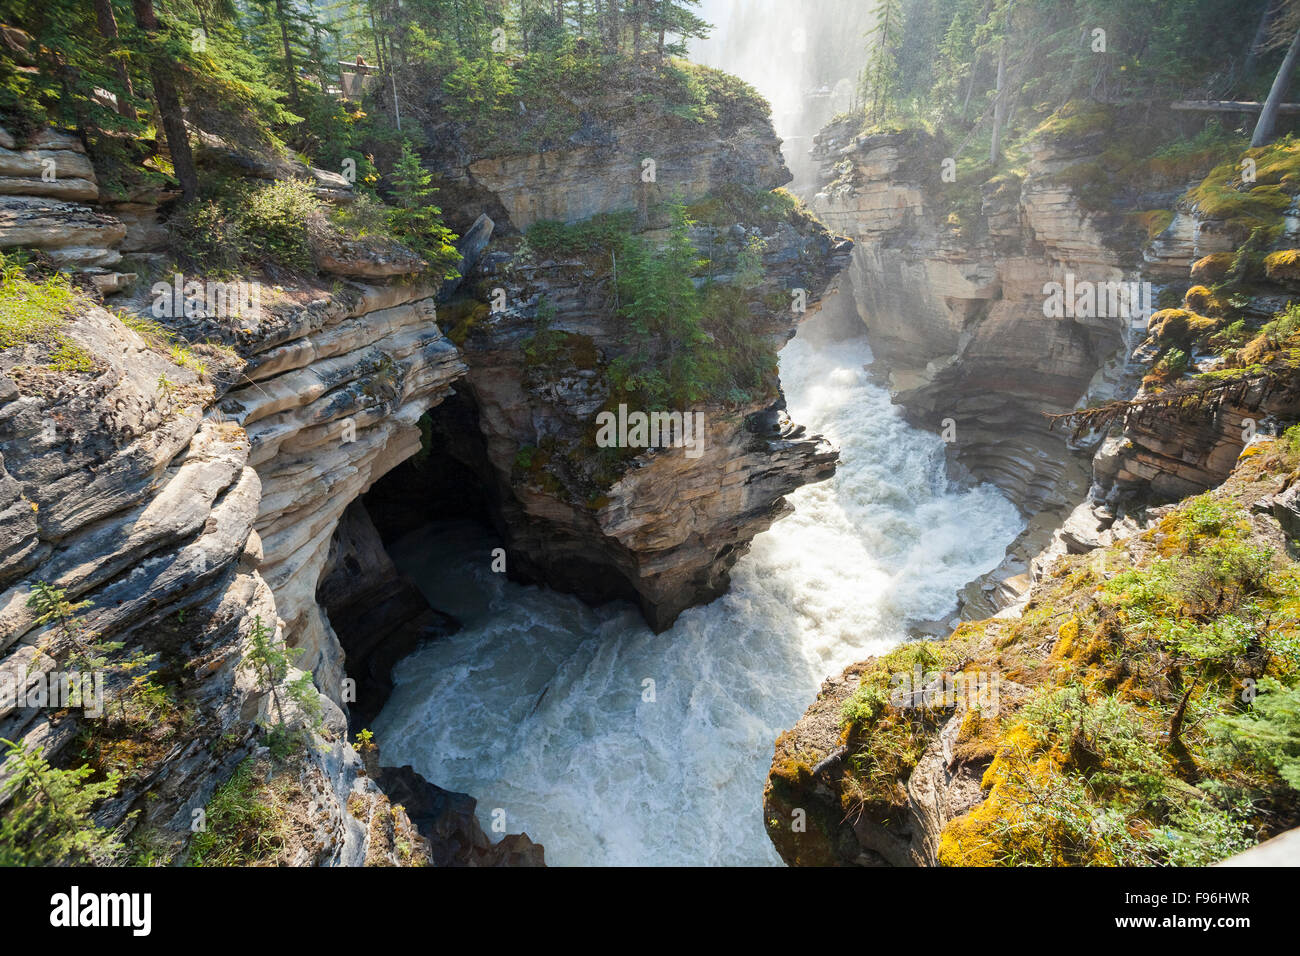 Athabasca Falls, Athabasca River, Jasper National Park, Alberta, Canada. Stock Photo